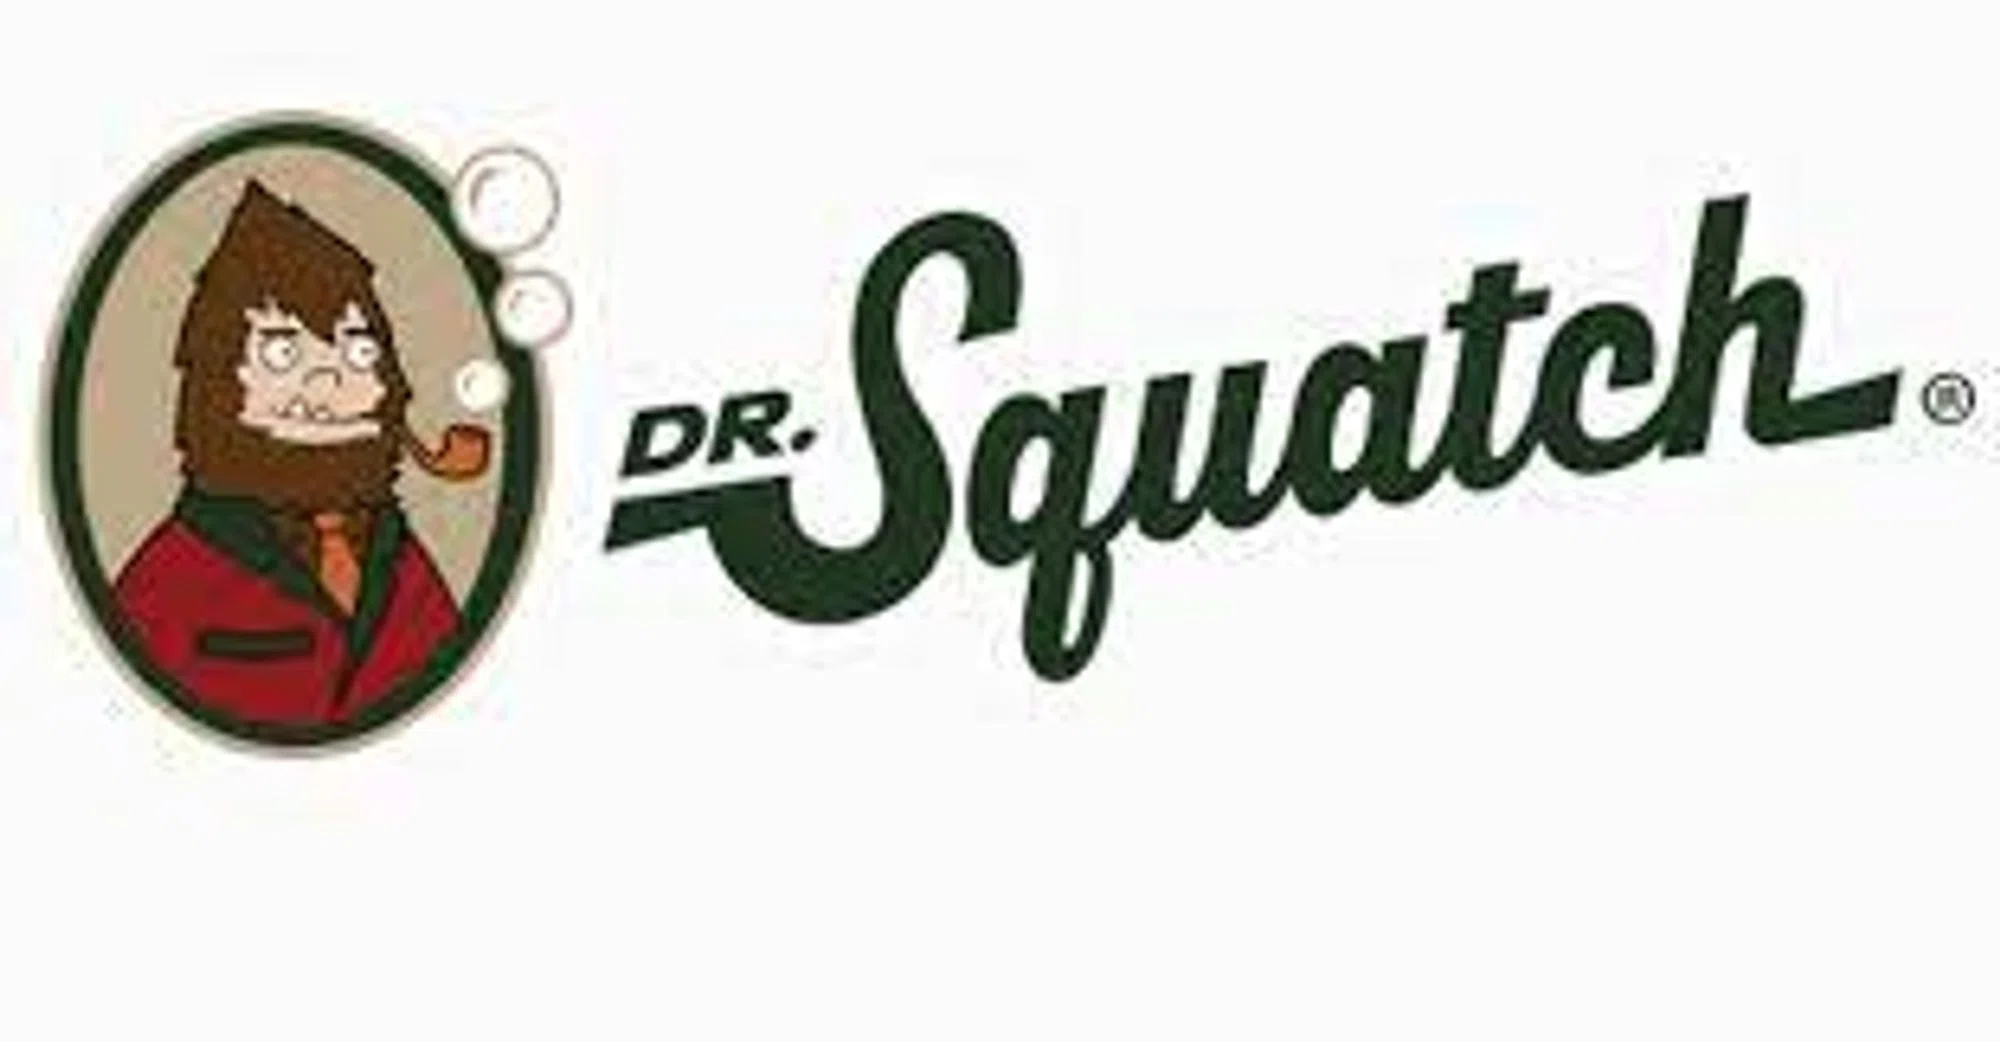 Dr. Squatch - Wikipedia